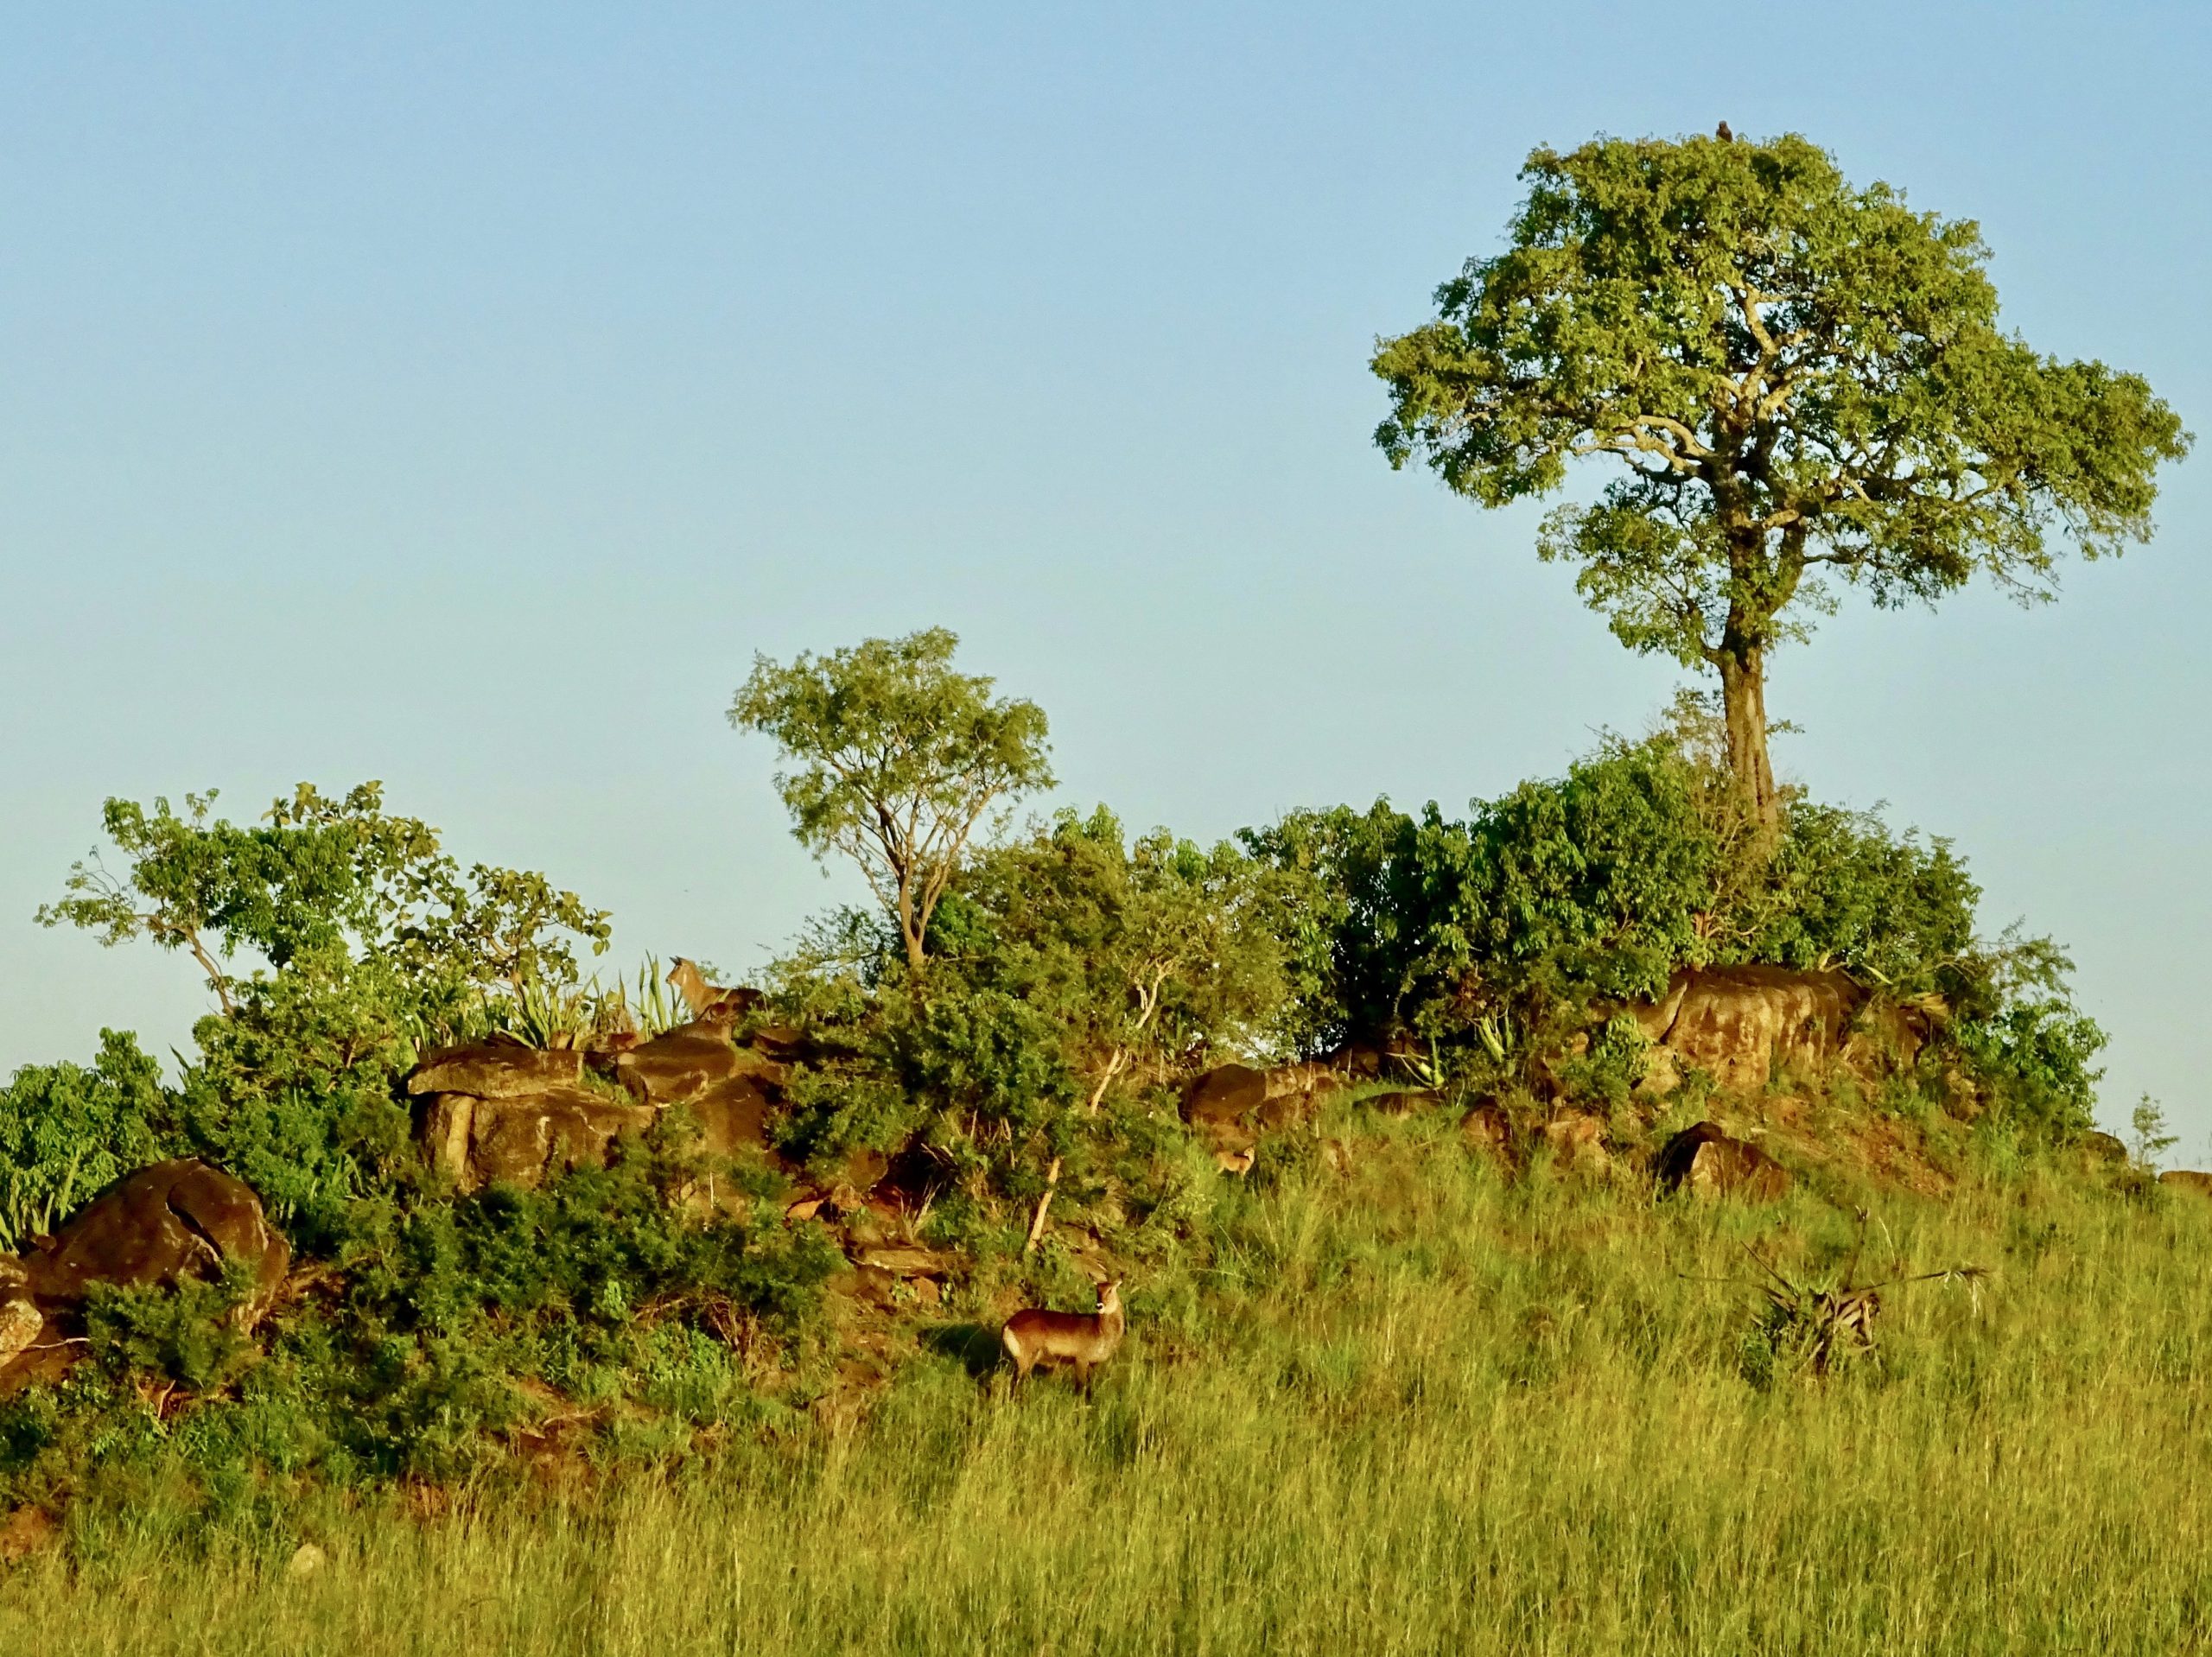 Impala's op een rots nabij het kamp